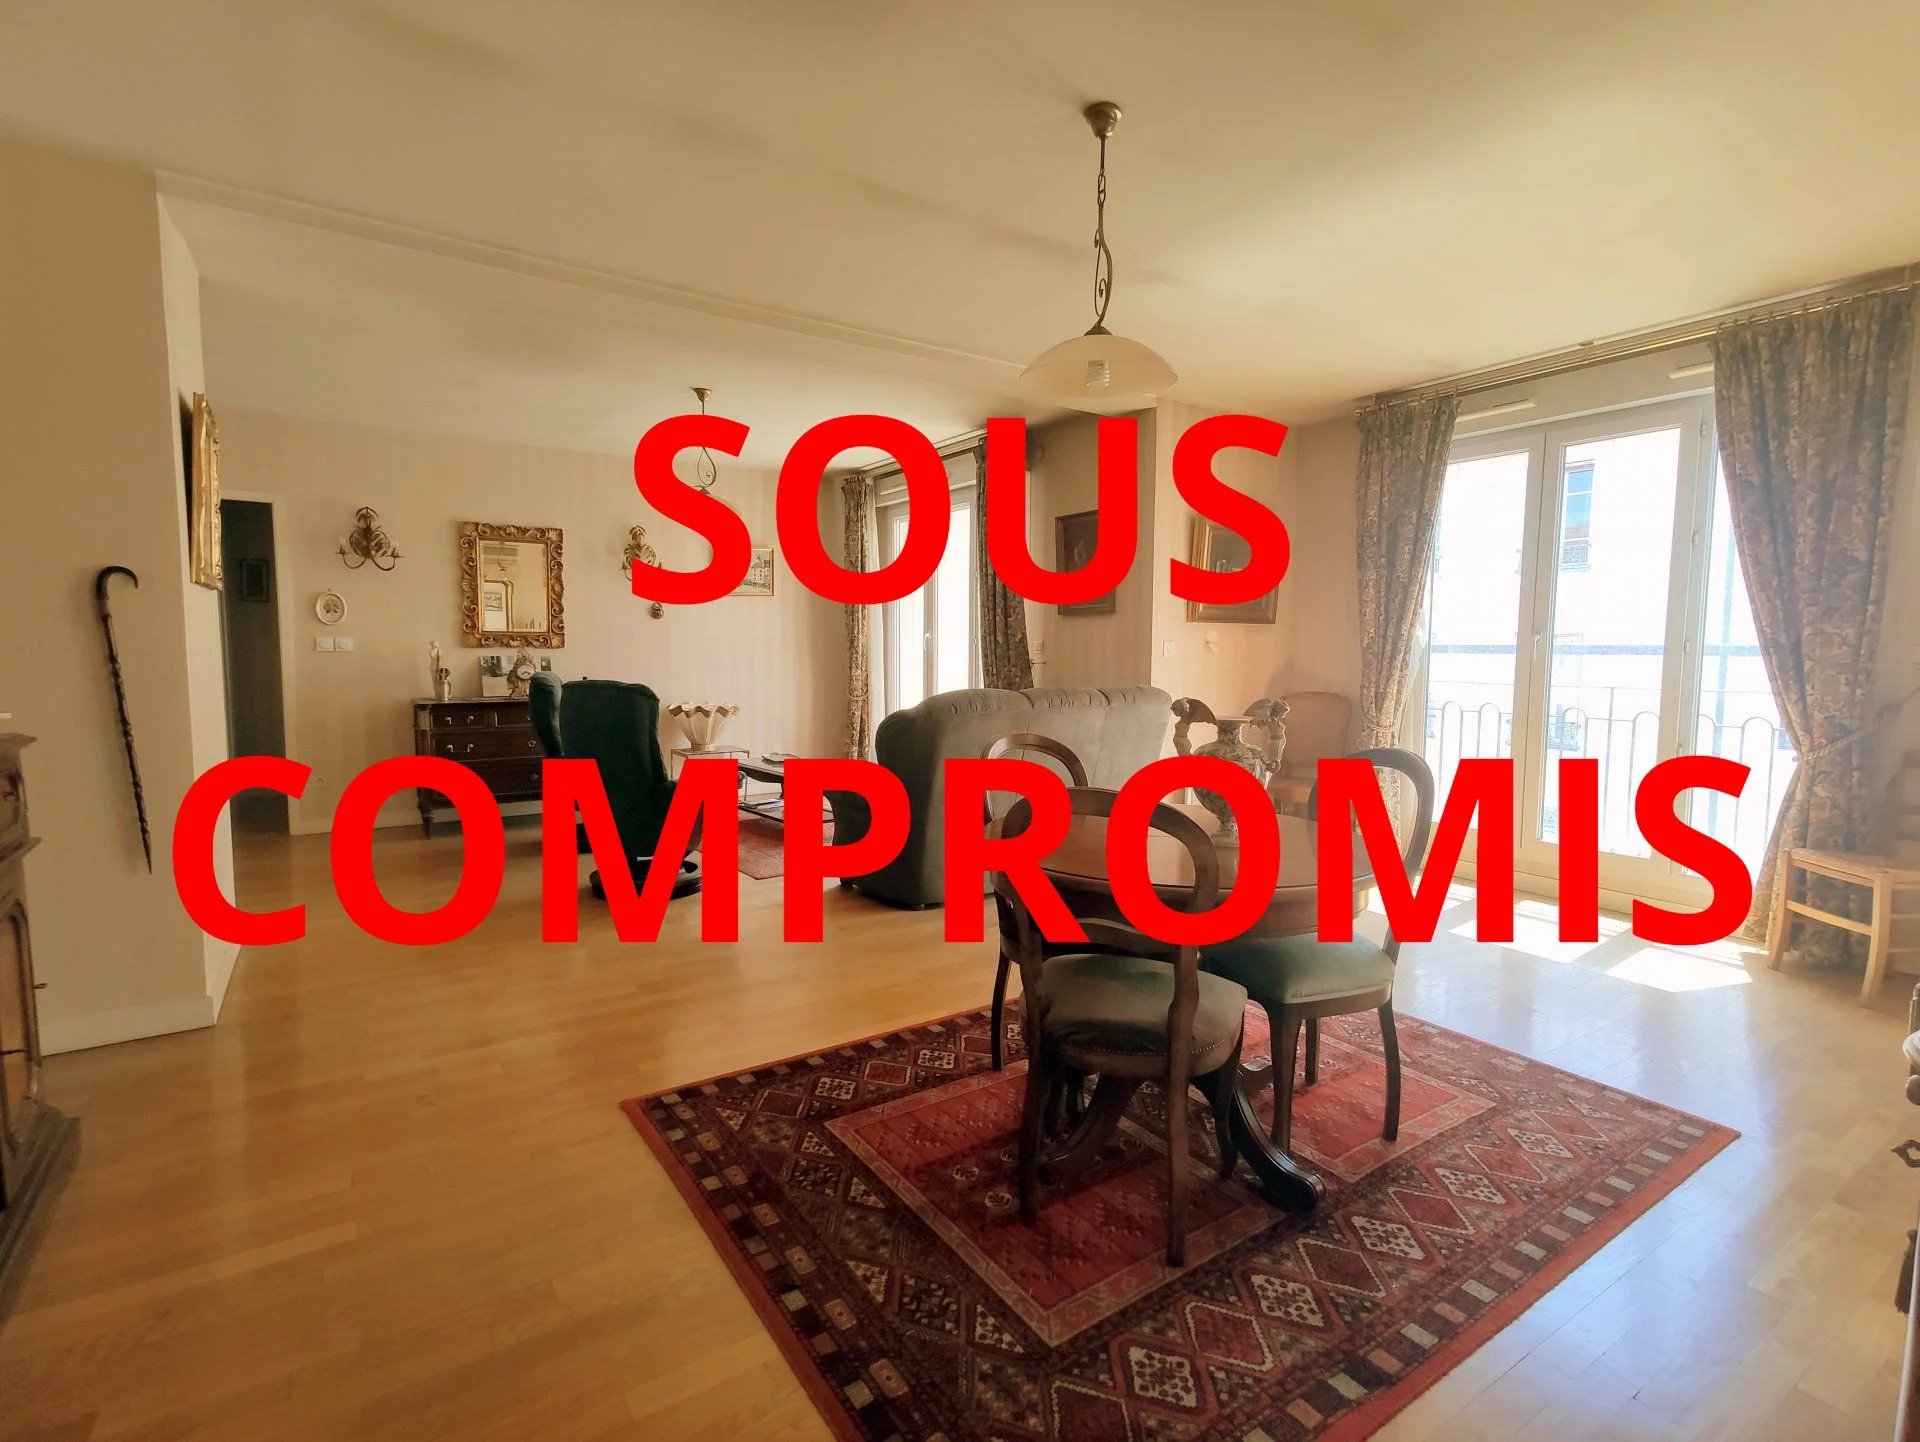 Sale Apartment - Lyon 7ème Jean Macé